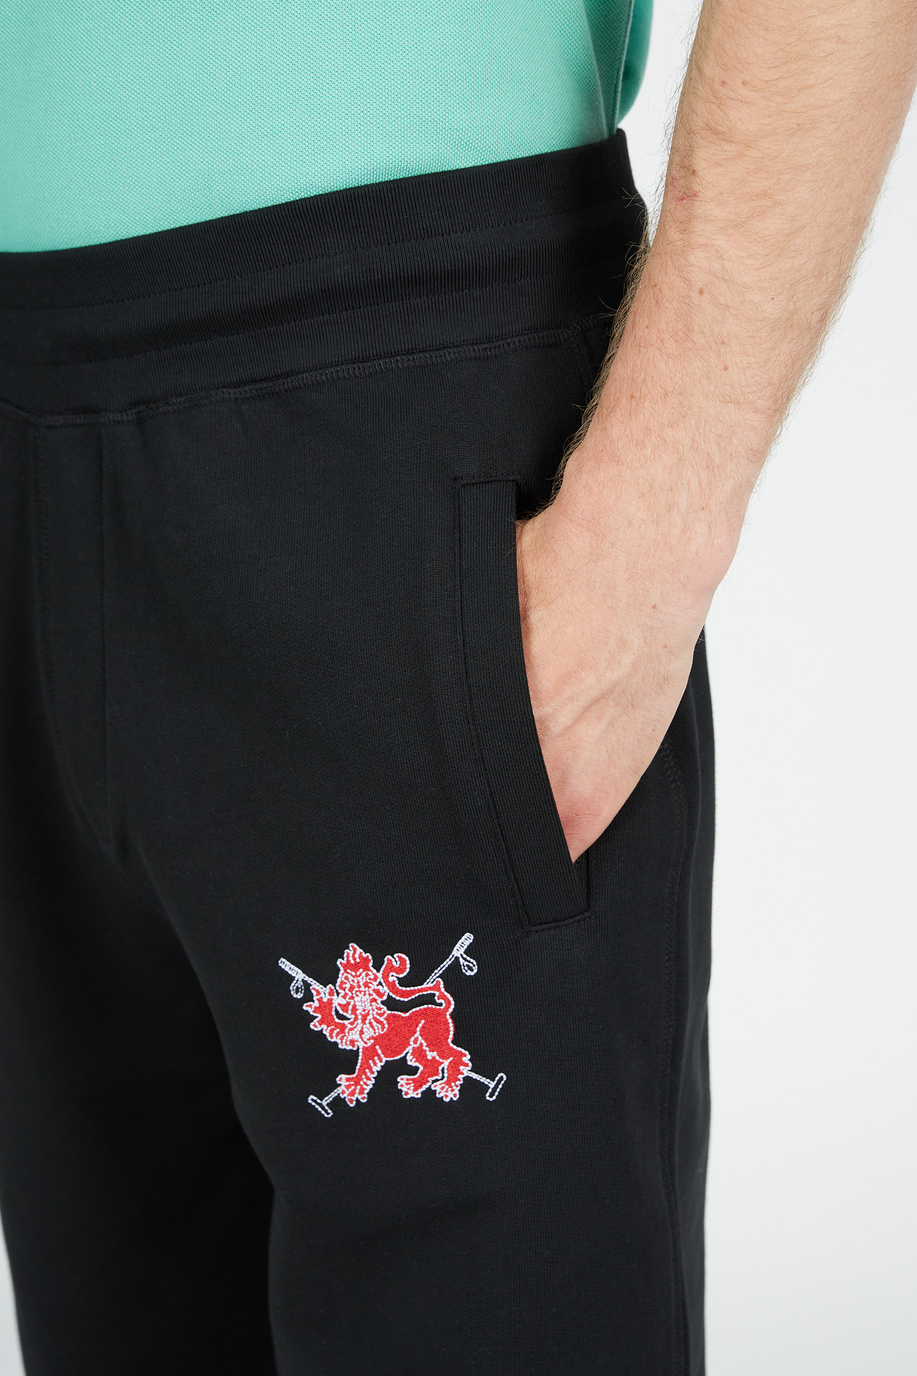 Comfort fit cotton joggers - Trousers | La Martina - Official Online Shop